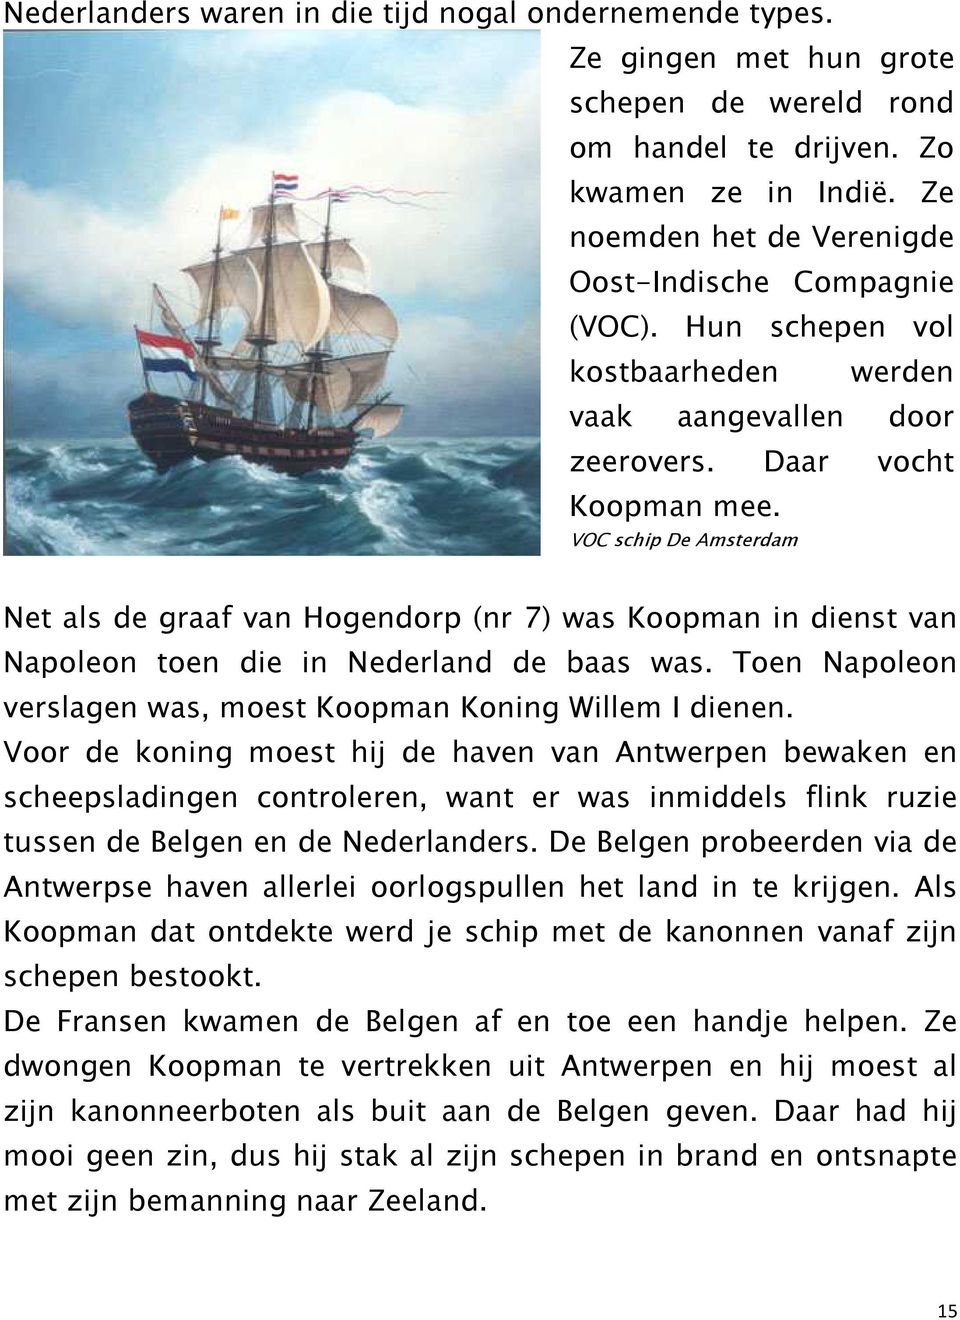 VOC schip De Amsterdam Net als de graaf van Hogendorp (nr 7) was Koopman in dienst van Napoleon toen die in Nederland de baas was. Toen Napoleon verslagen was, moest Koopman Koning Willem I dienen.